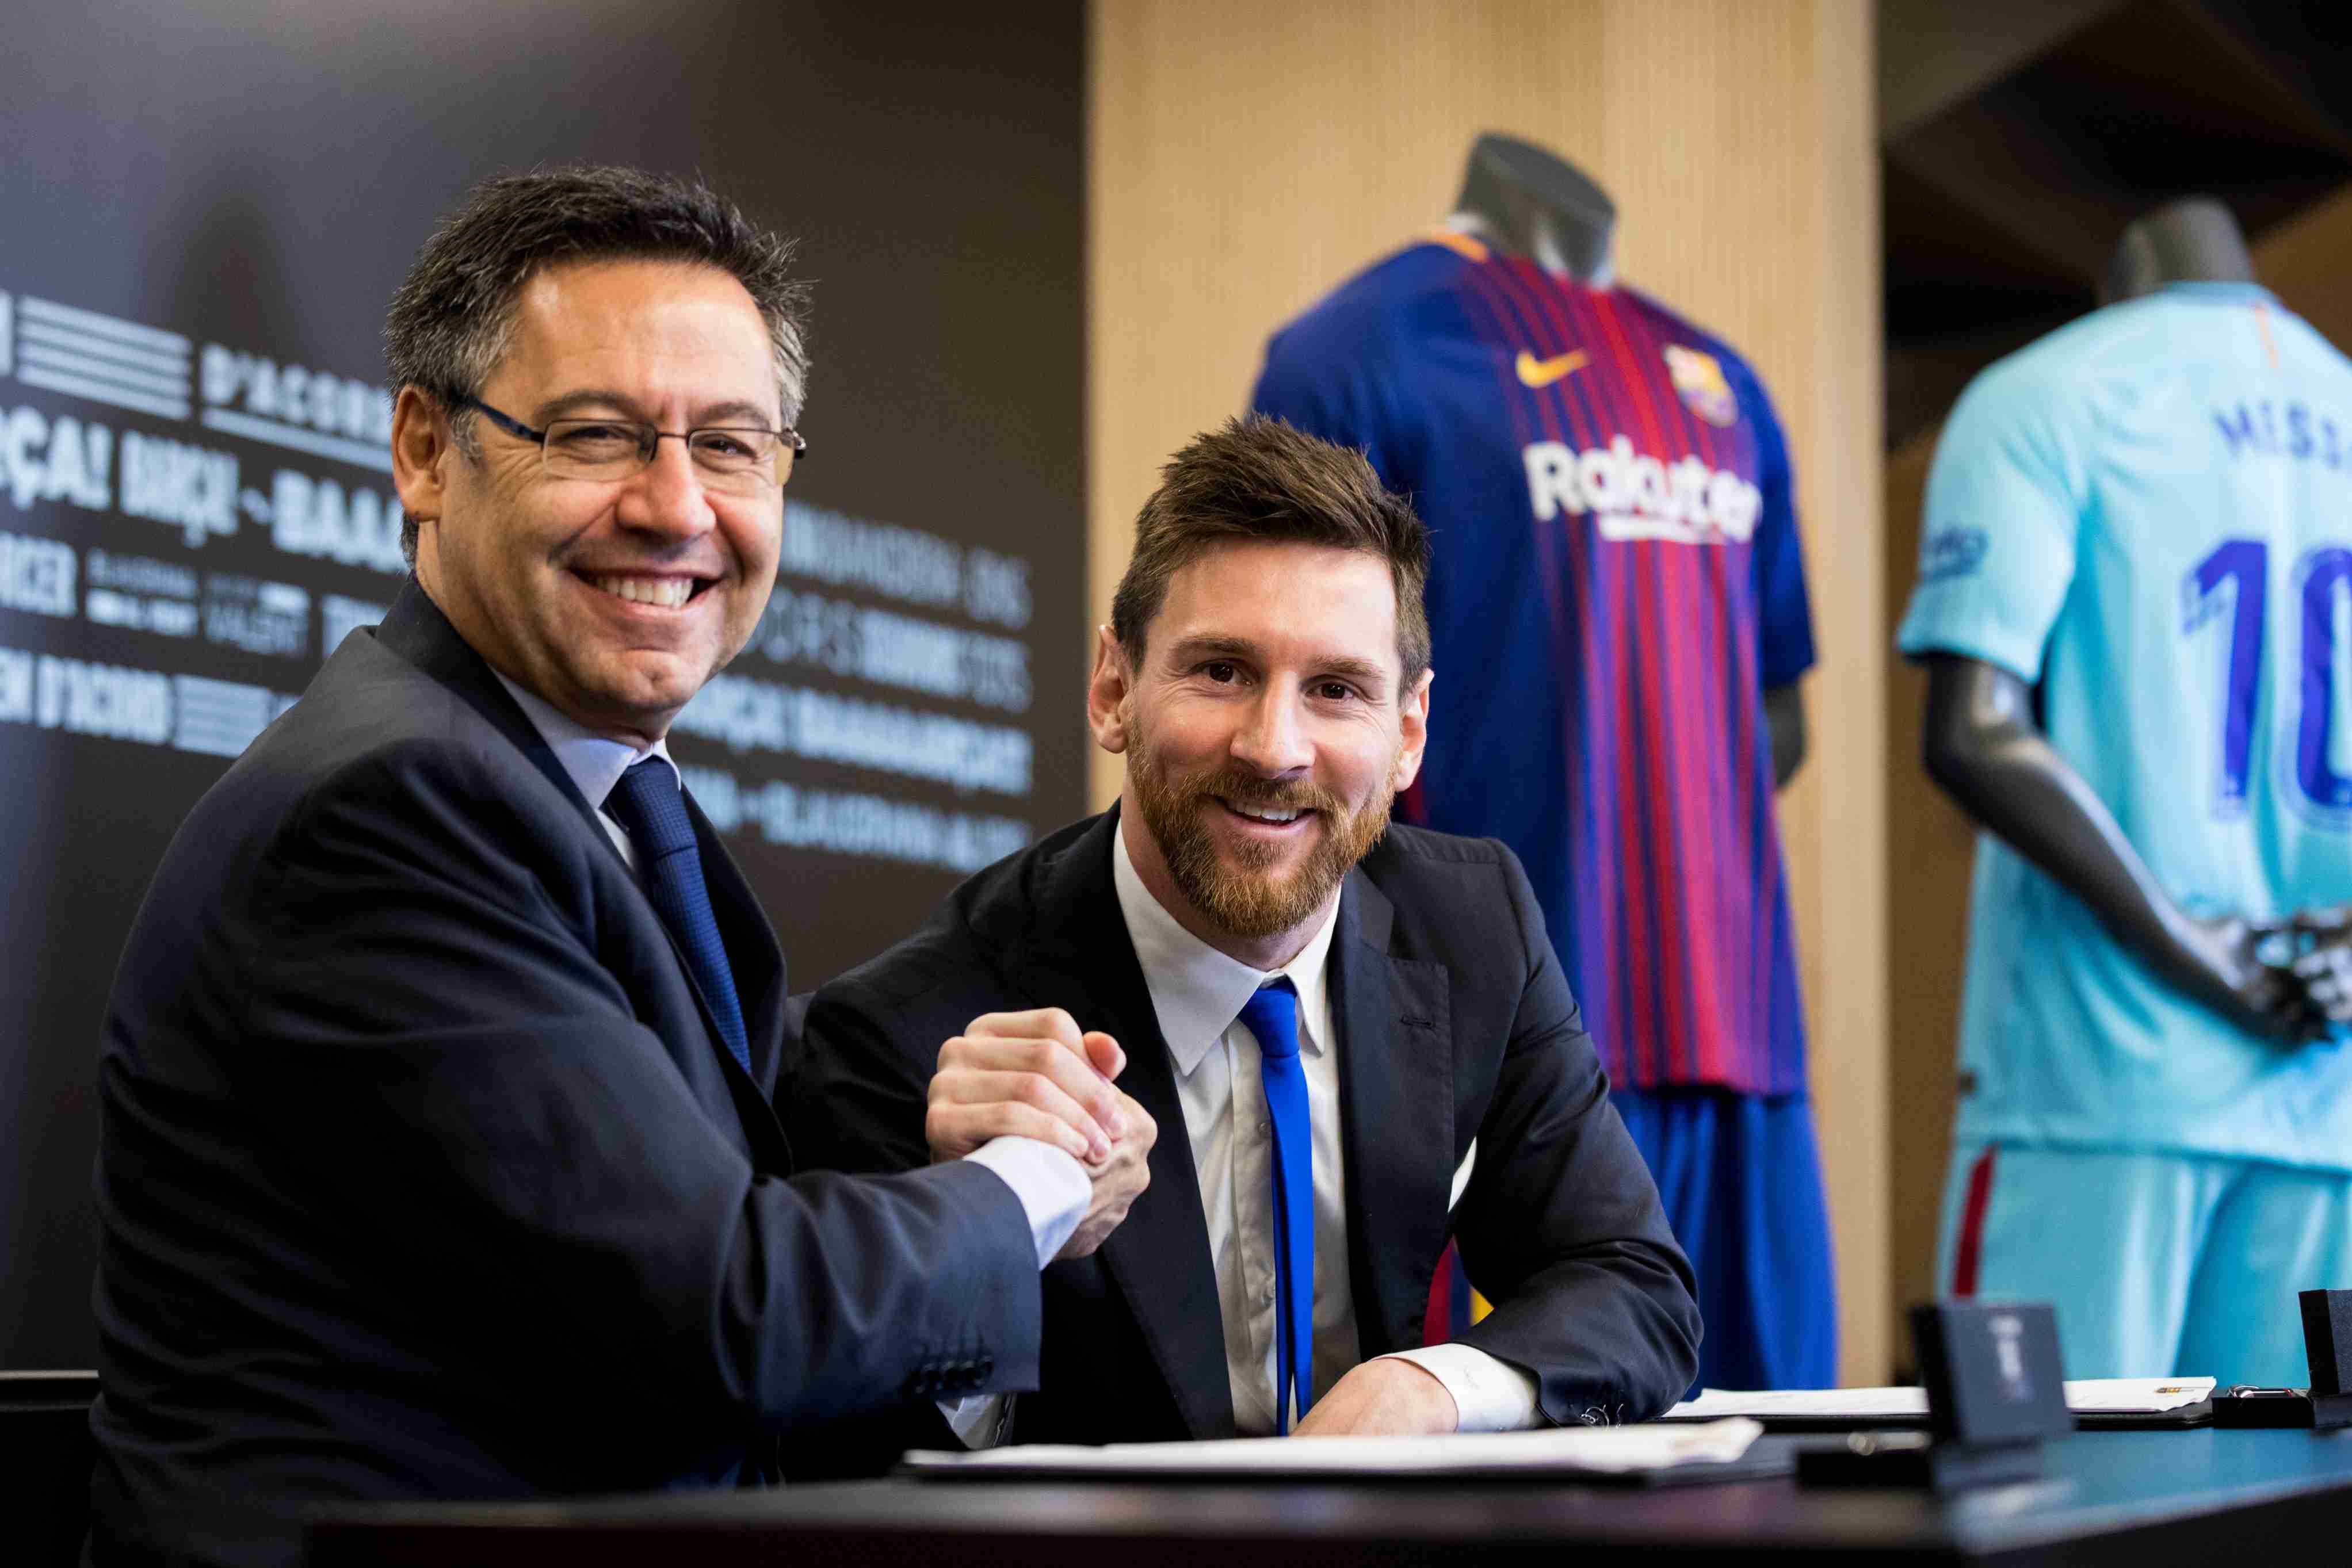 Hisenda investiga els pagaments del Barça a la Fundació Messi, segons 'El Mundo'